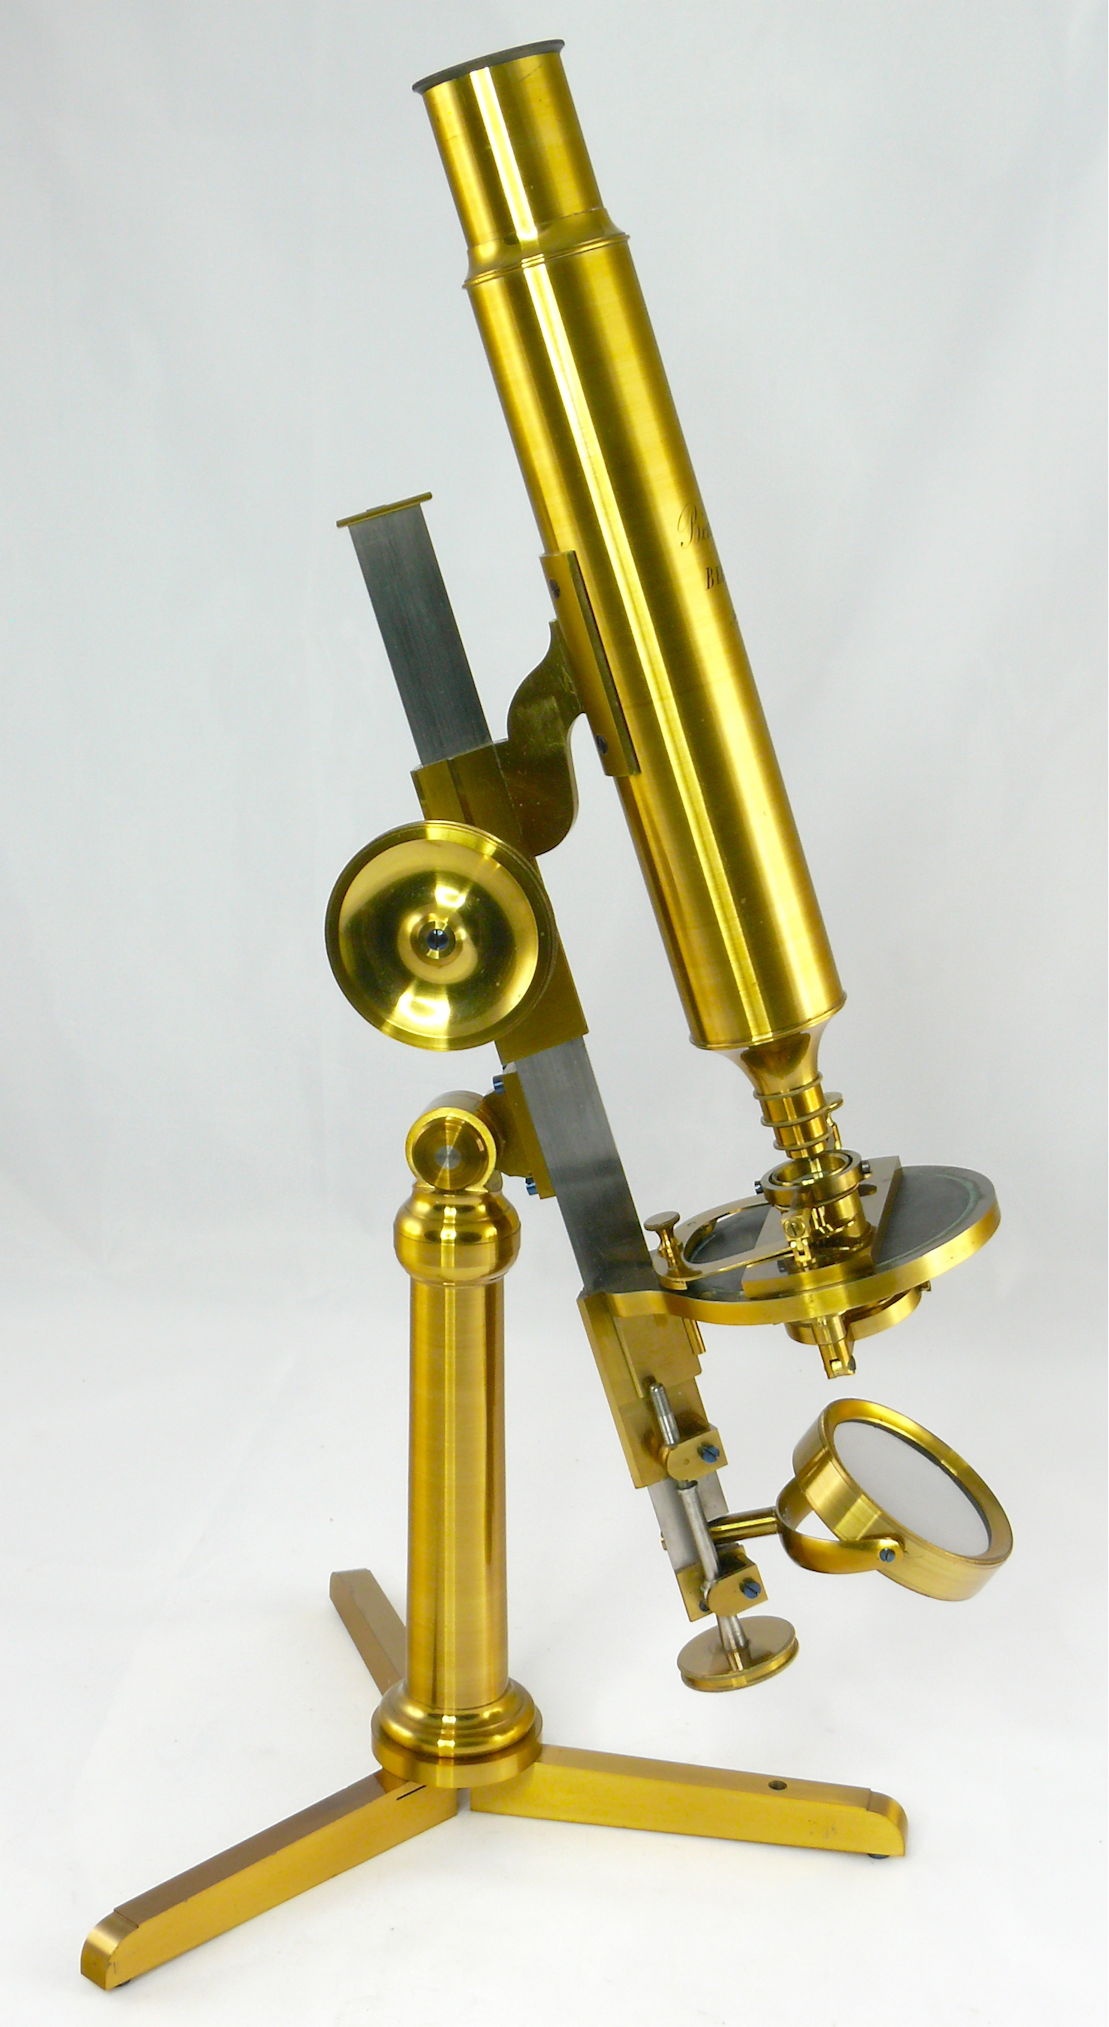 Microscope composé